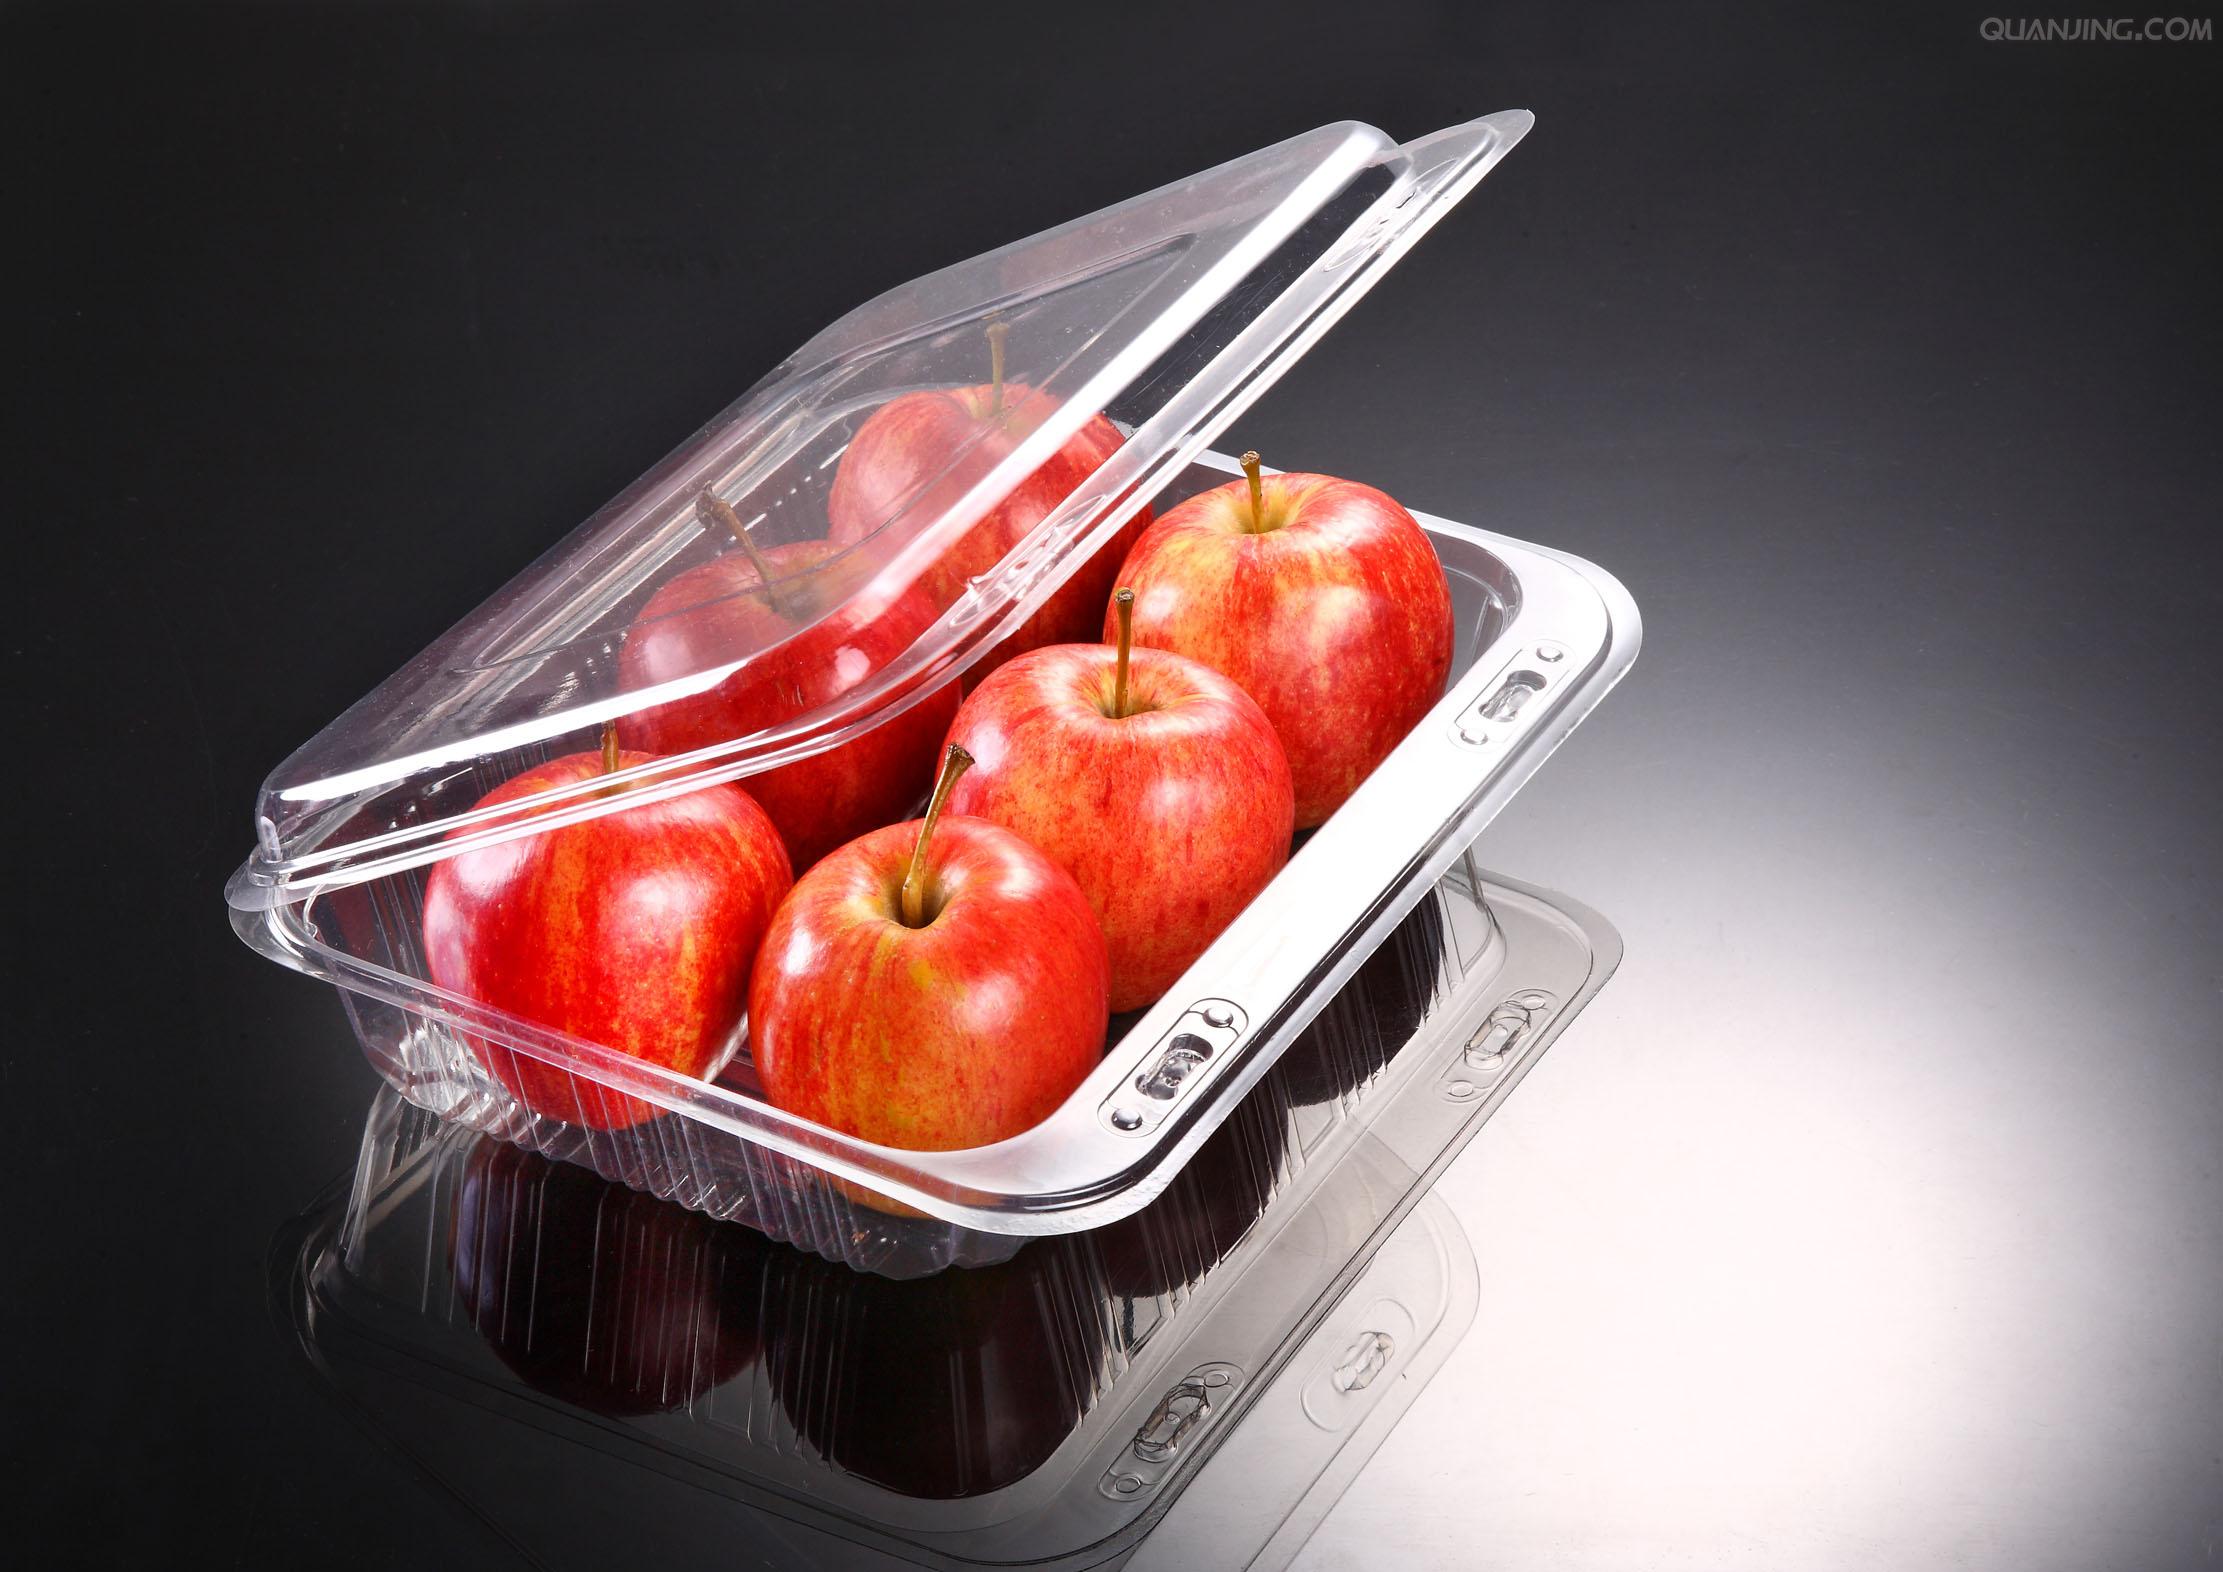 吸塑盒水果类包装胶盒 食品吸塑盒工具吸塑盒 食品级吸塑盒图片